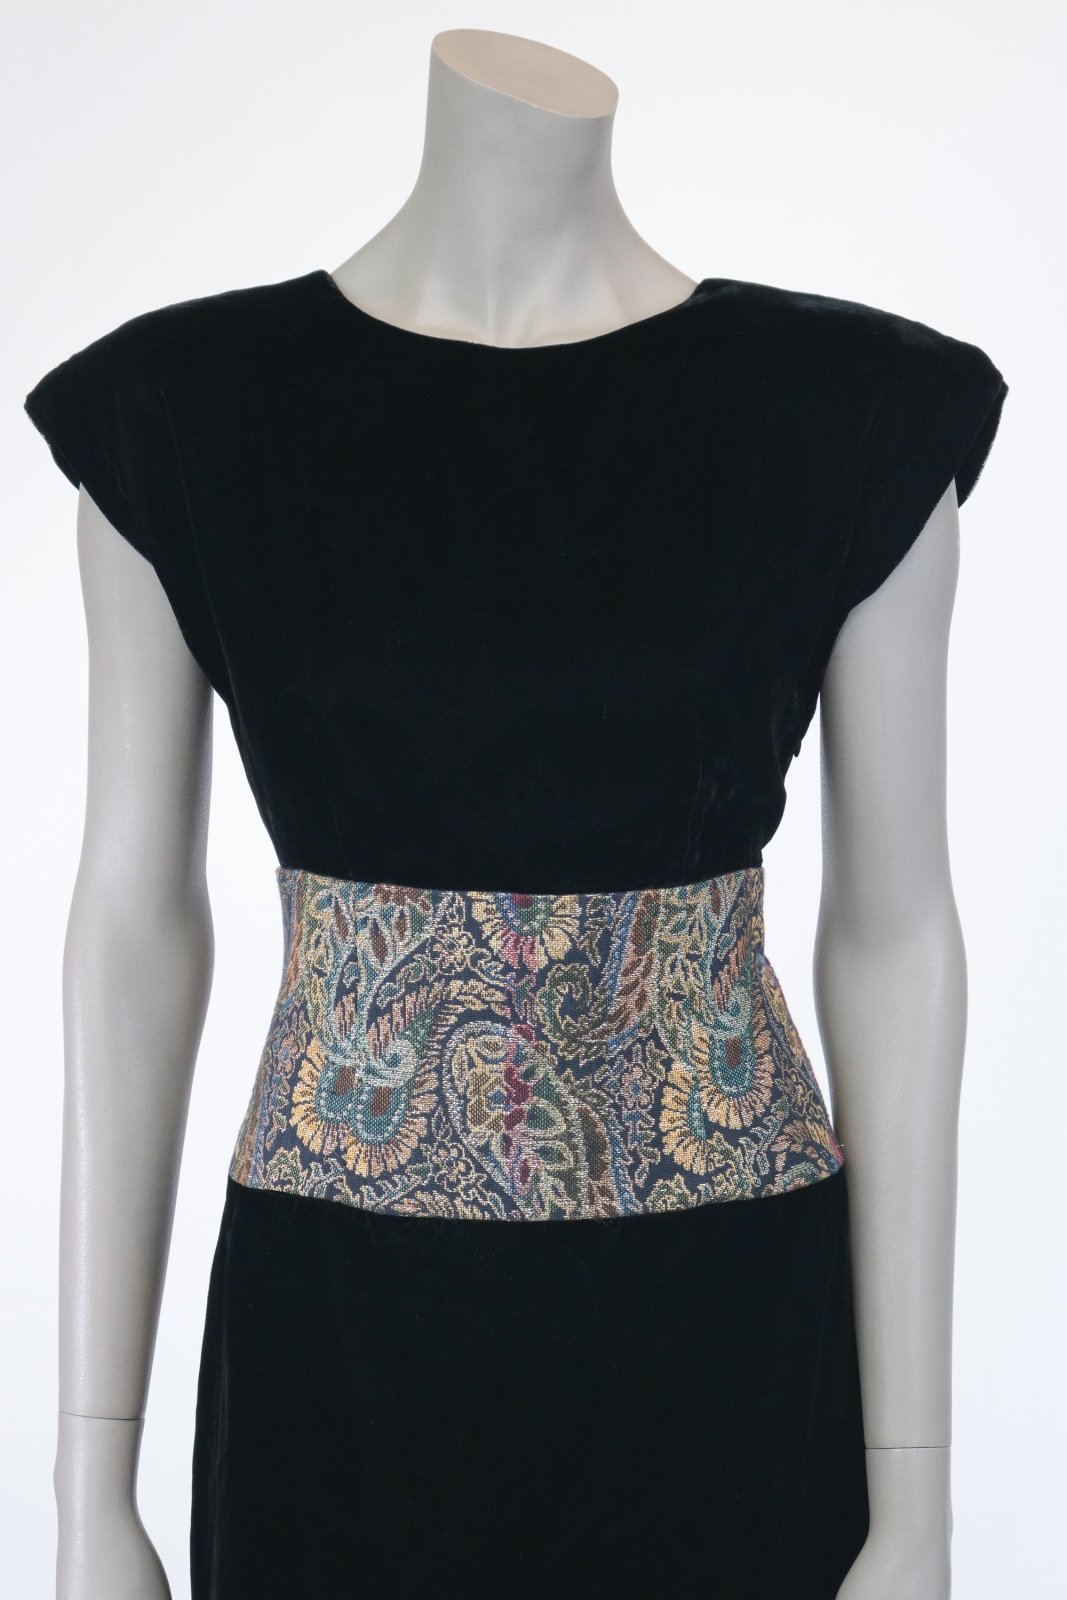 1980s Black Velvet and Brocade Backless Dress - Floria Vintage